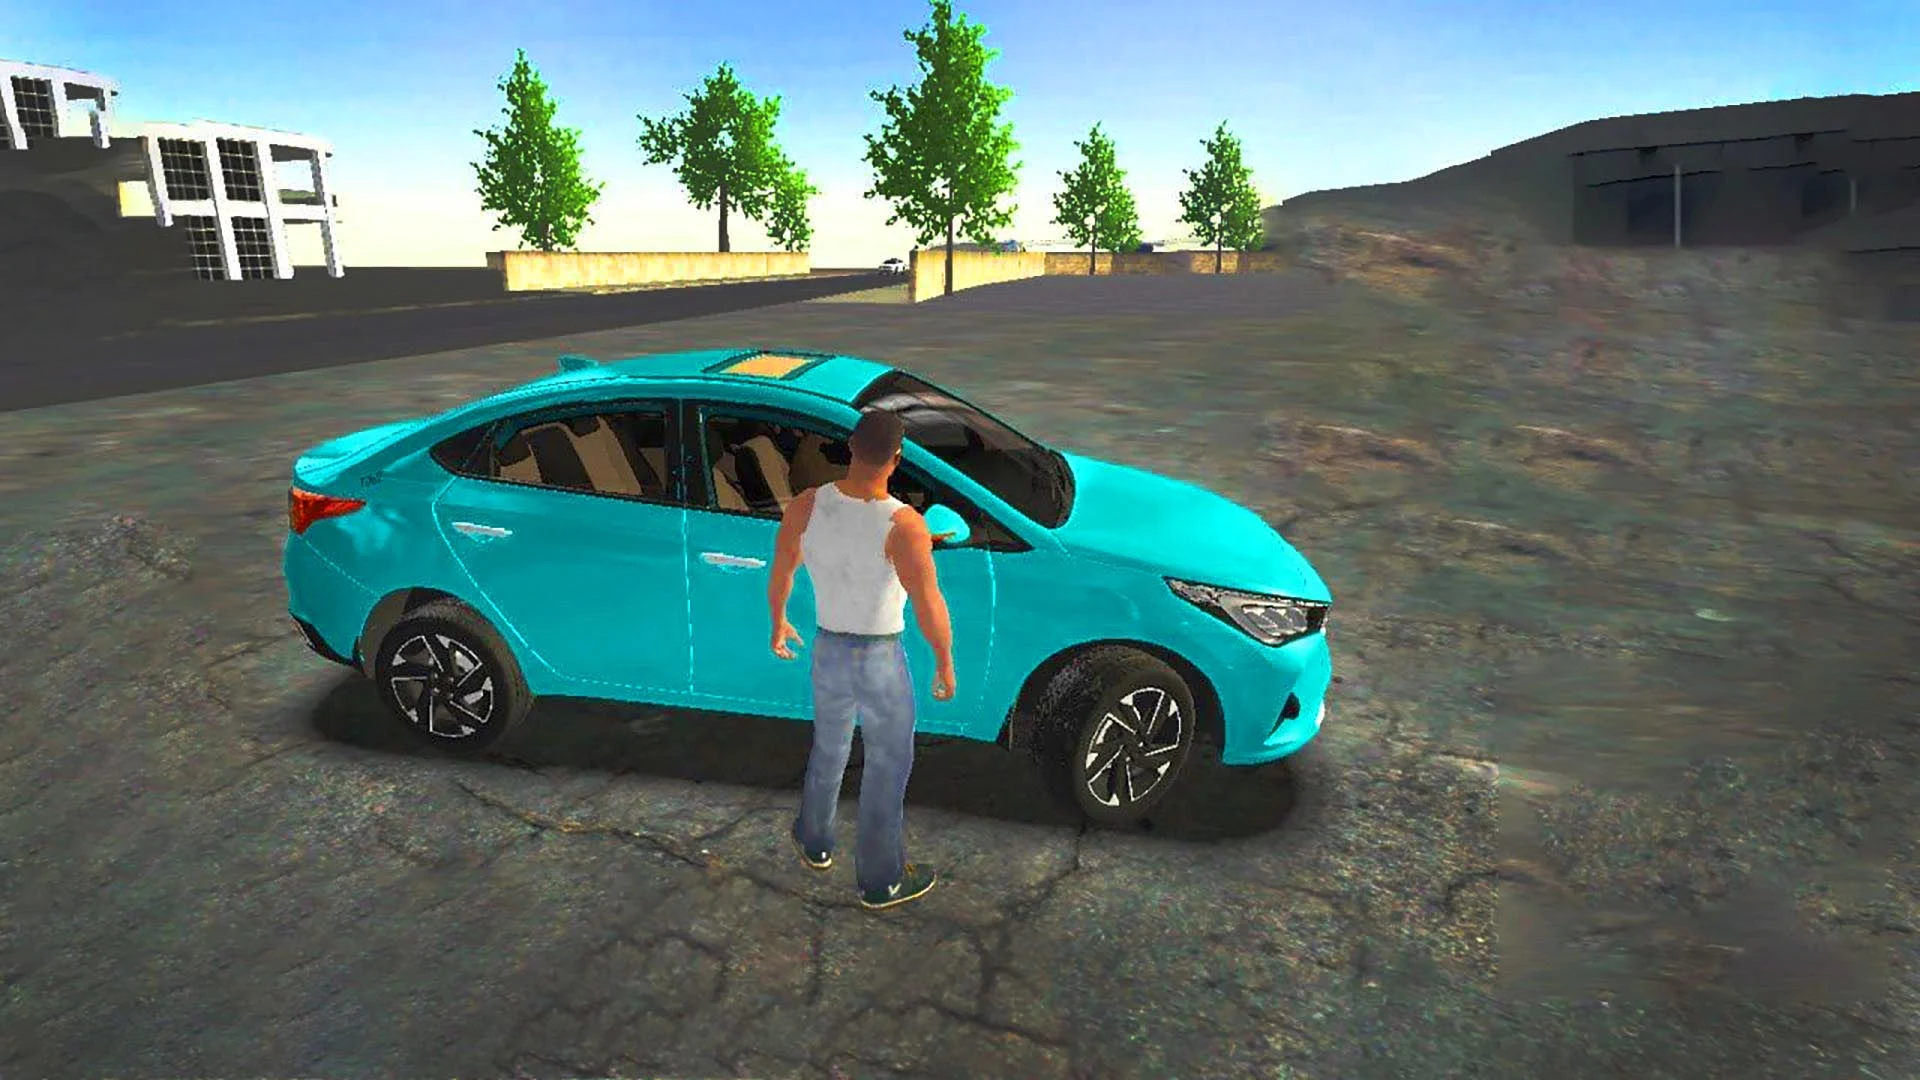 Indian Car Games Simulator 3d